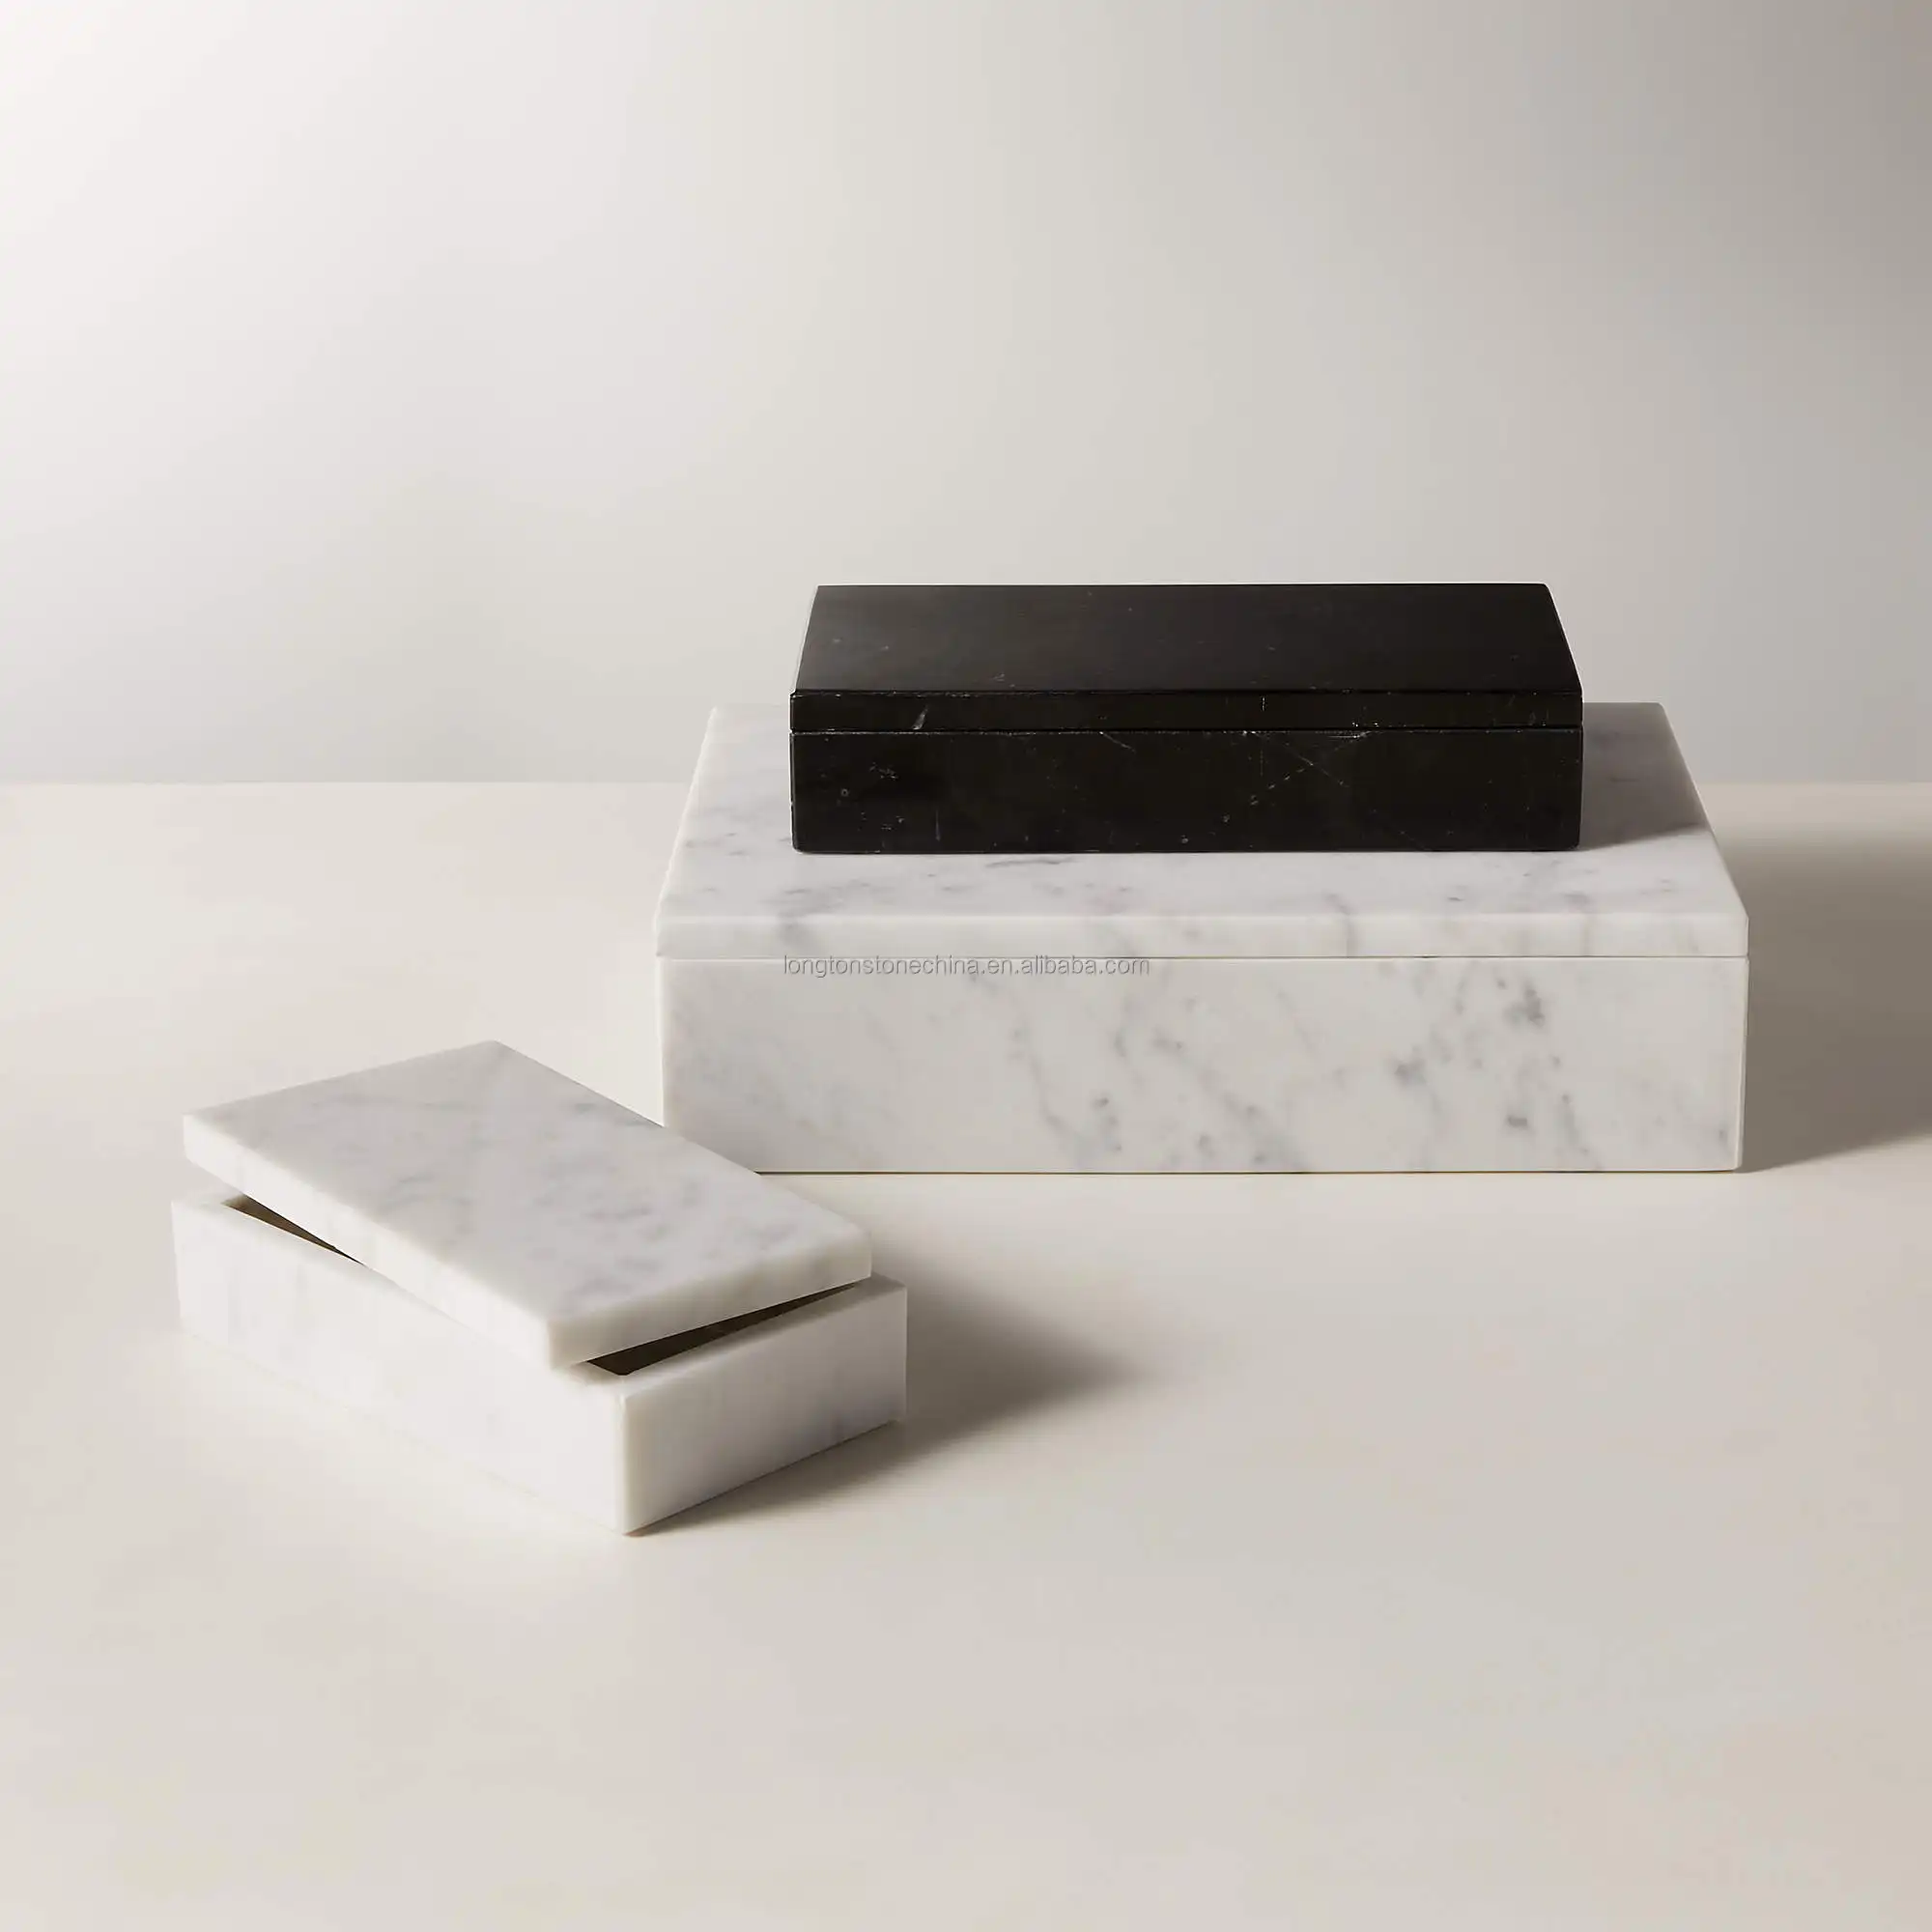 नया सफेद काला संगमरमर भंडारण बॉक्स, ढक्कन हार कंगन टेबल टॉप संगमरमर आभूषण बॉक्स के साथ प्राकृतिक पत्थर बॉक्स